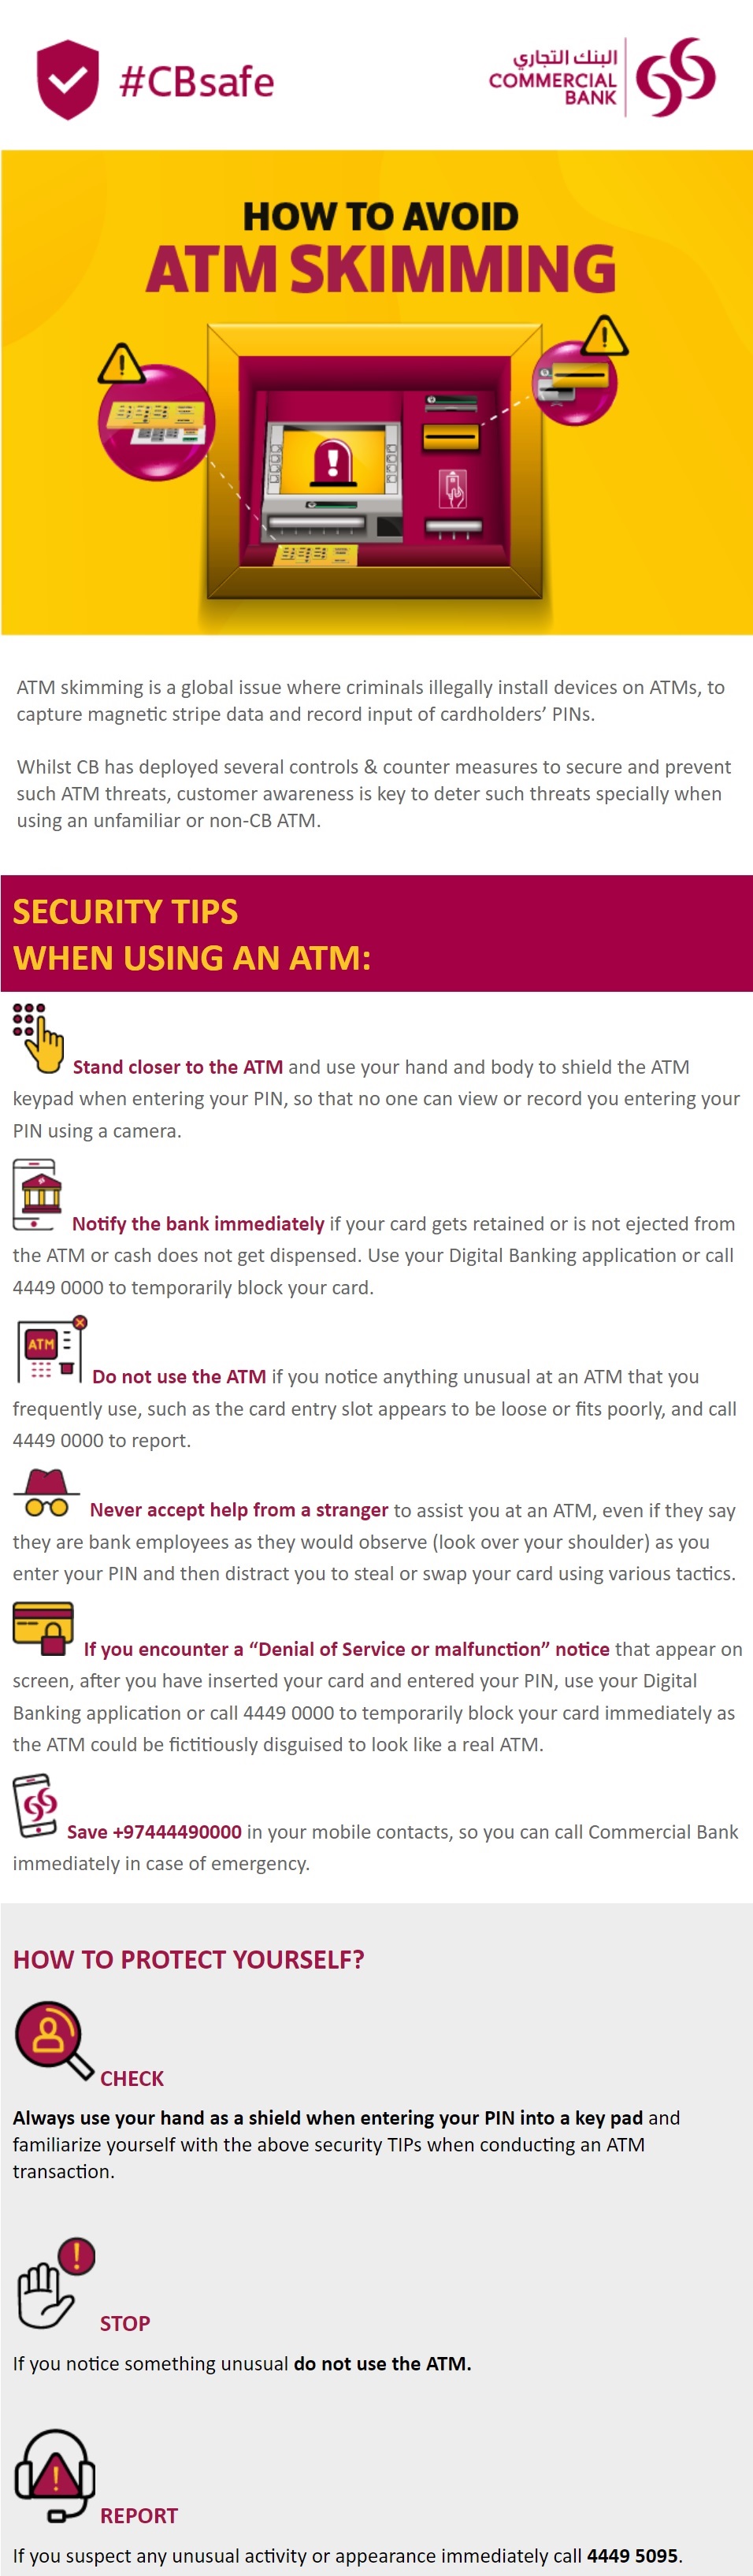 How to avoid ATM Skimming.jpg